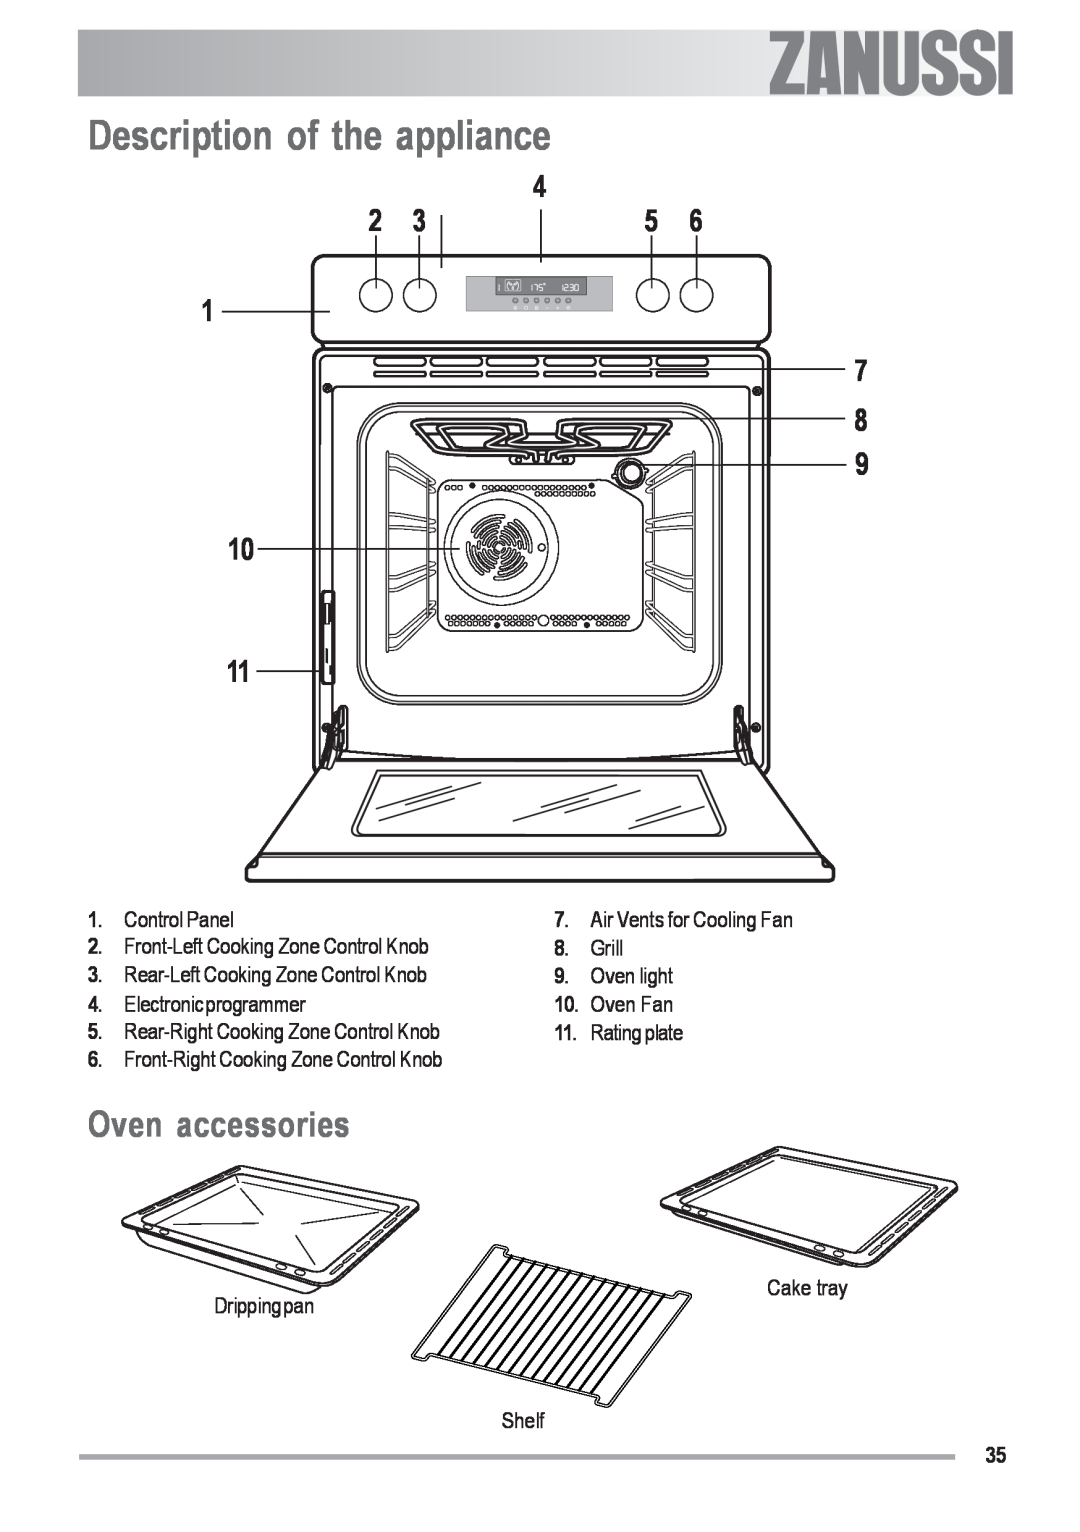 Zanussi ZOU 592 user manual Description of the appliance, Oven accessories 